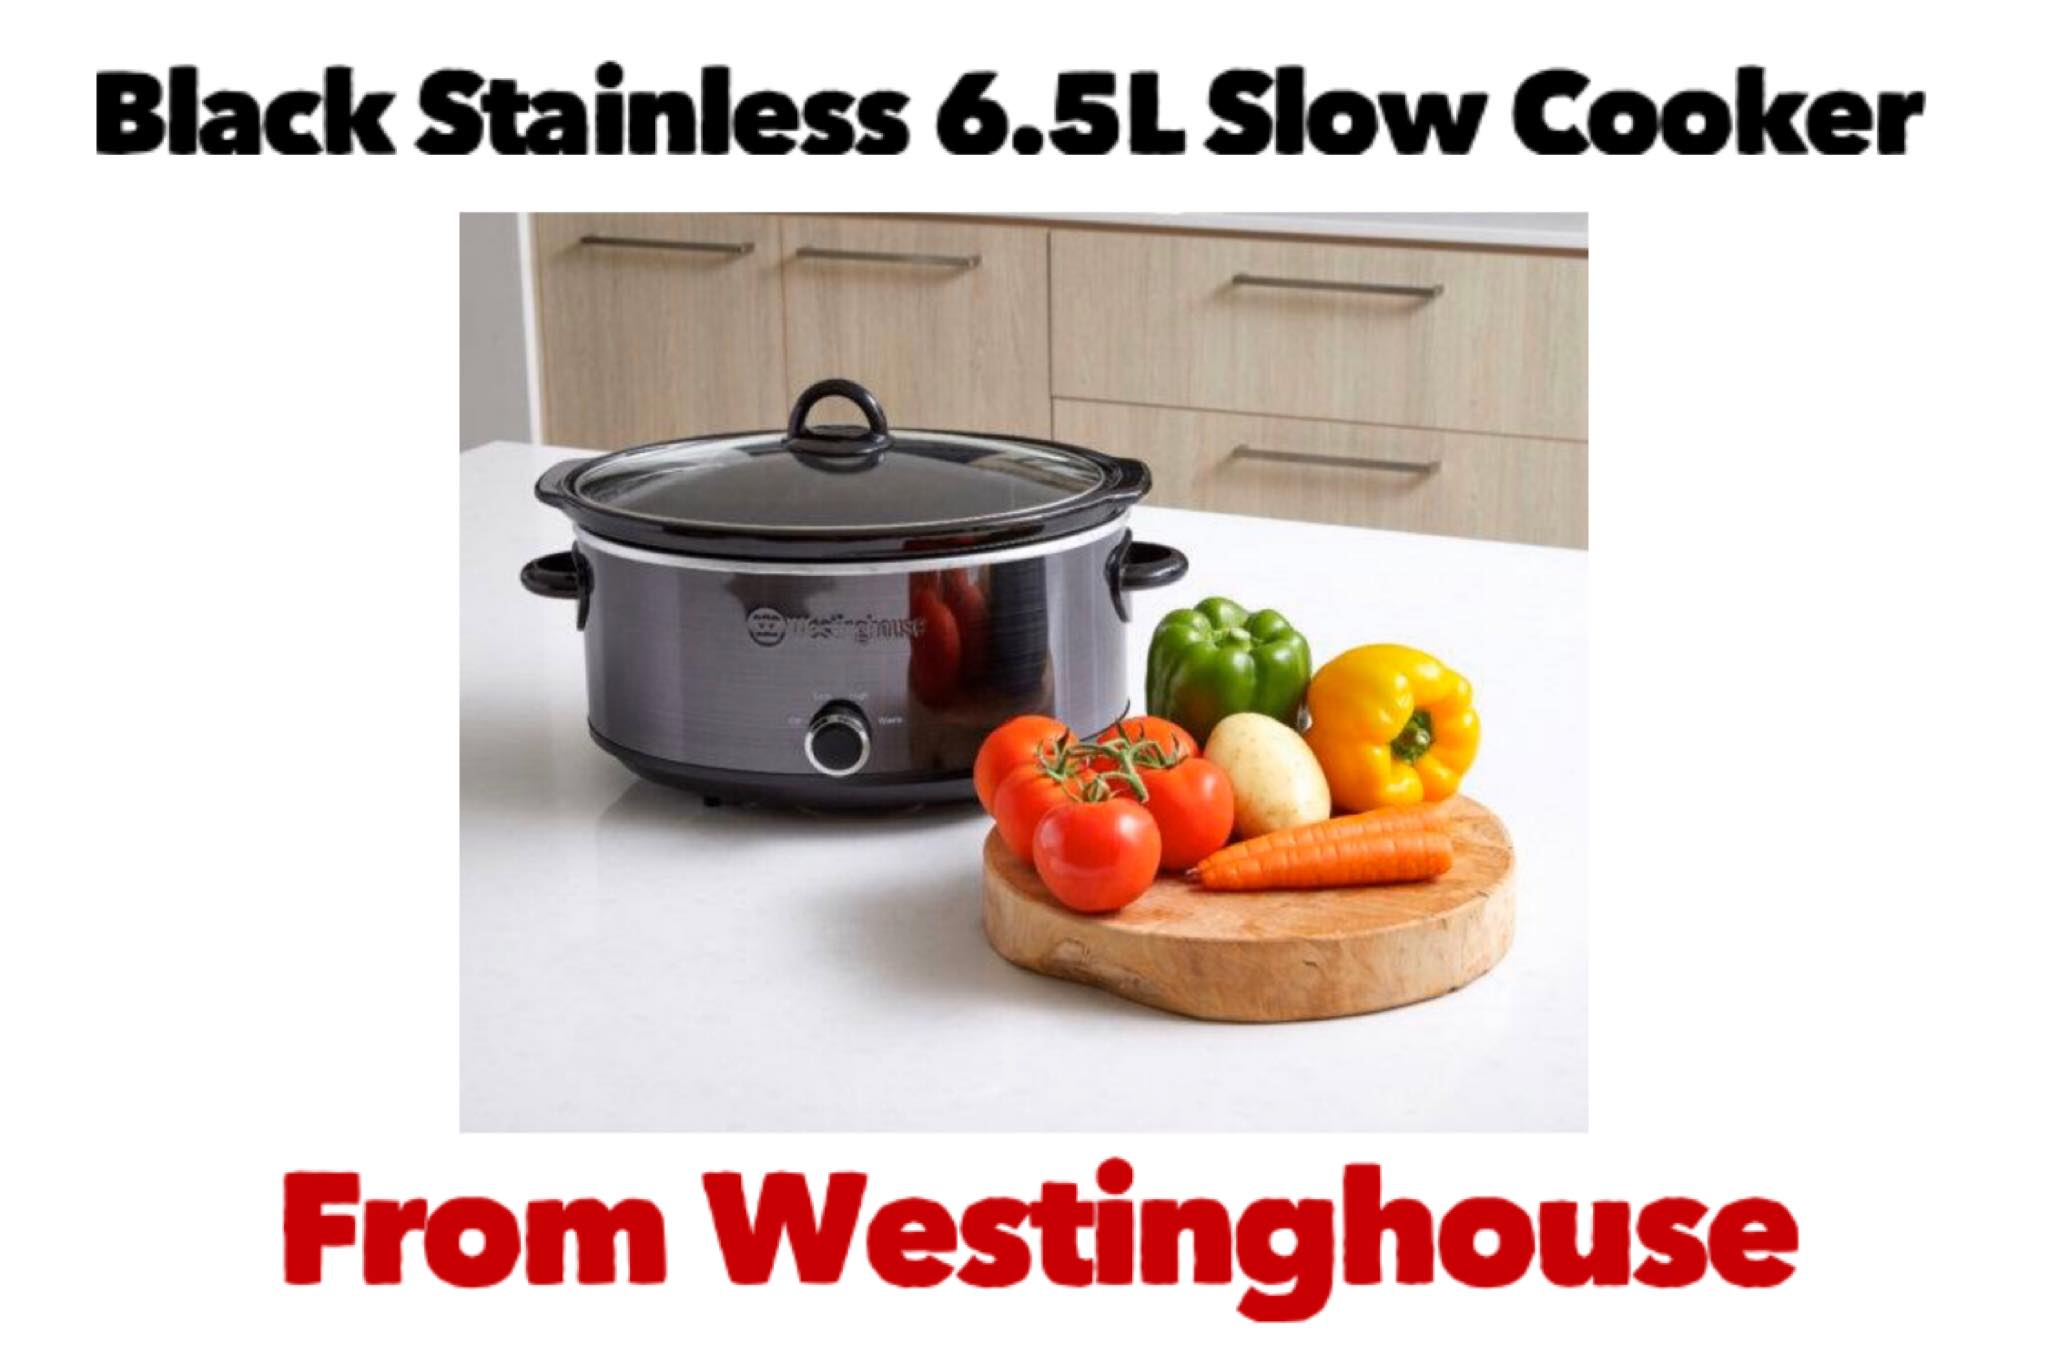 Westinghouse Slow Cooker 2 x 2.5L Ceramic Pots Auto Function –